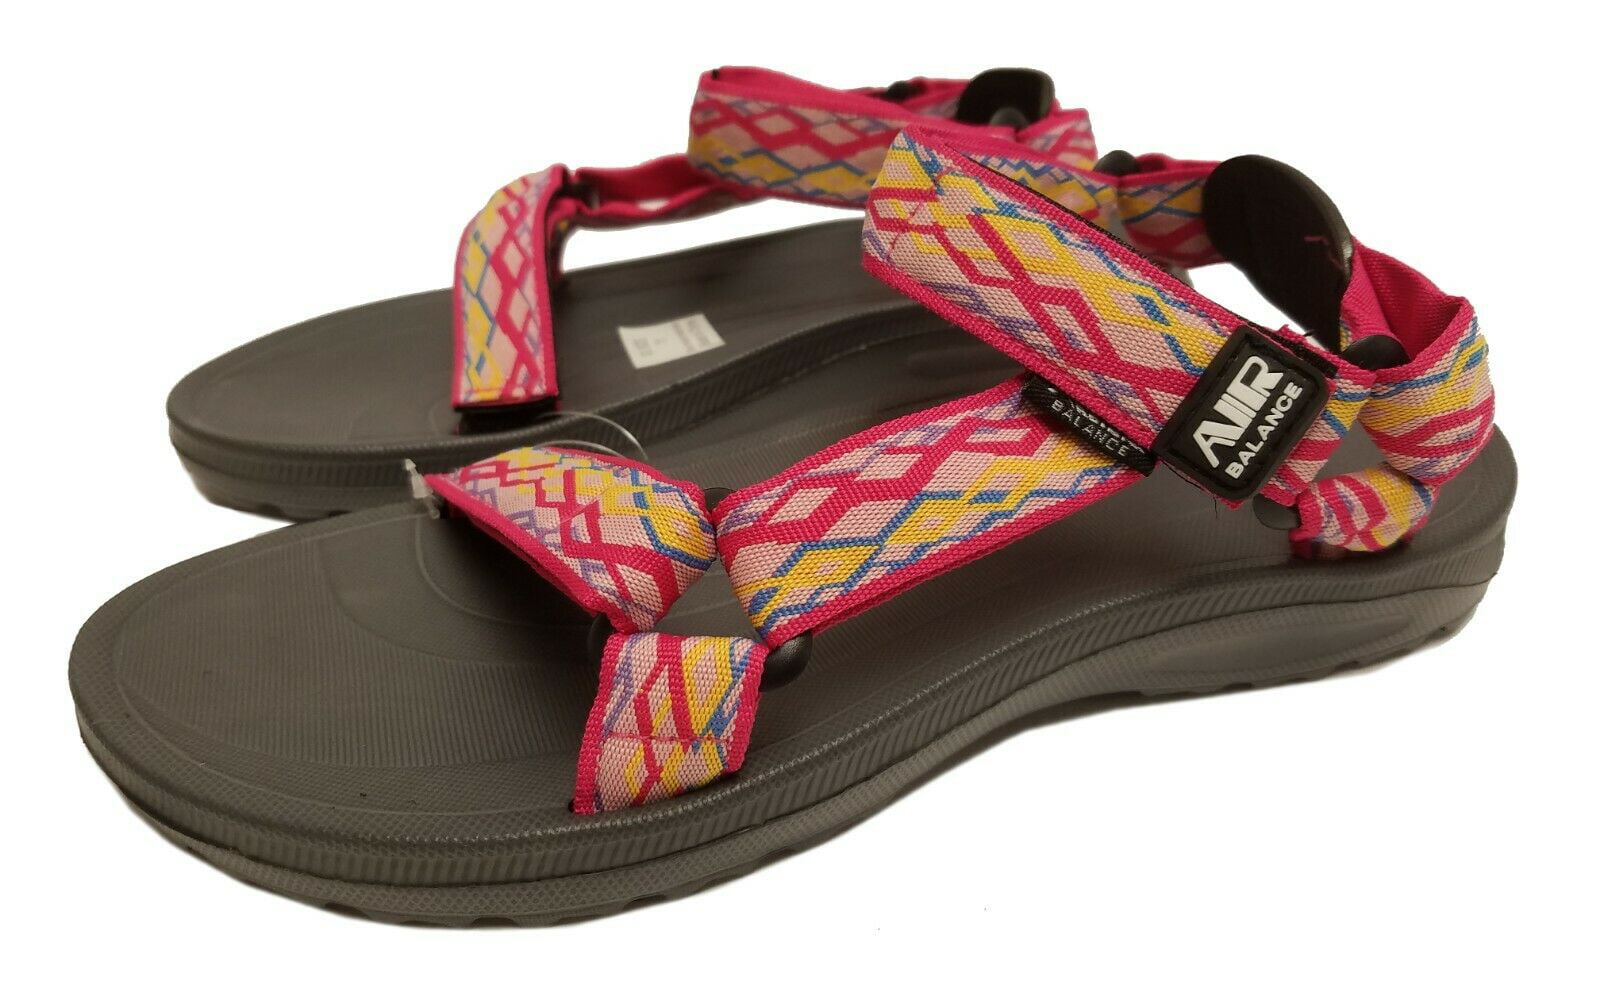 women's water sandals